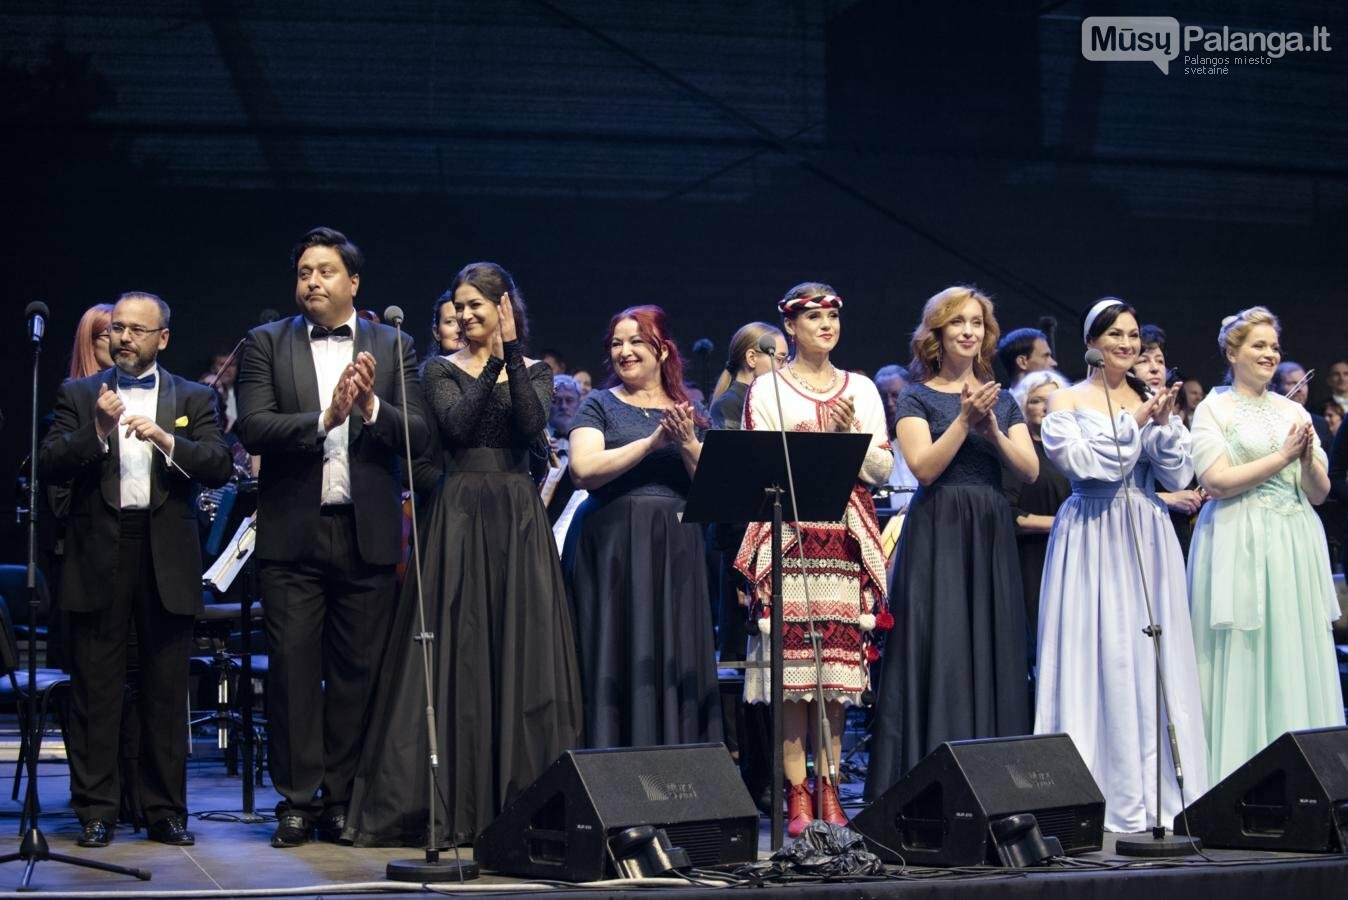 Klaipėdos festivalio pražios koncertas „Karo ir taikos dainos“ -  padėka ir padrąsinimas Ukrainos žmonėms, nuotrauka-23